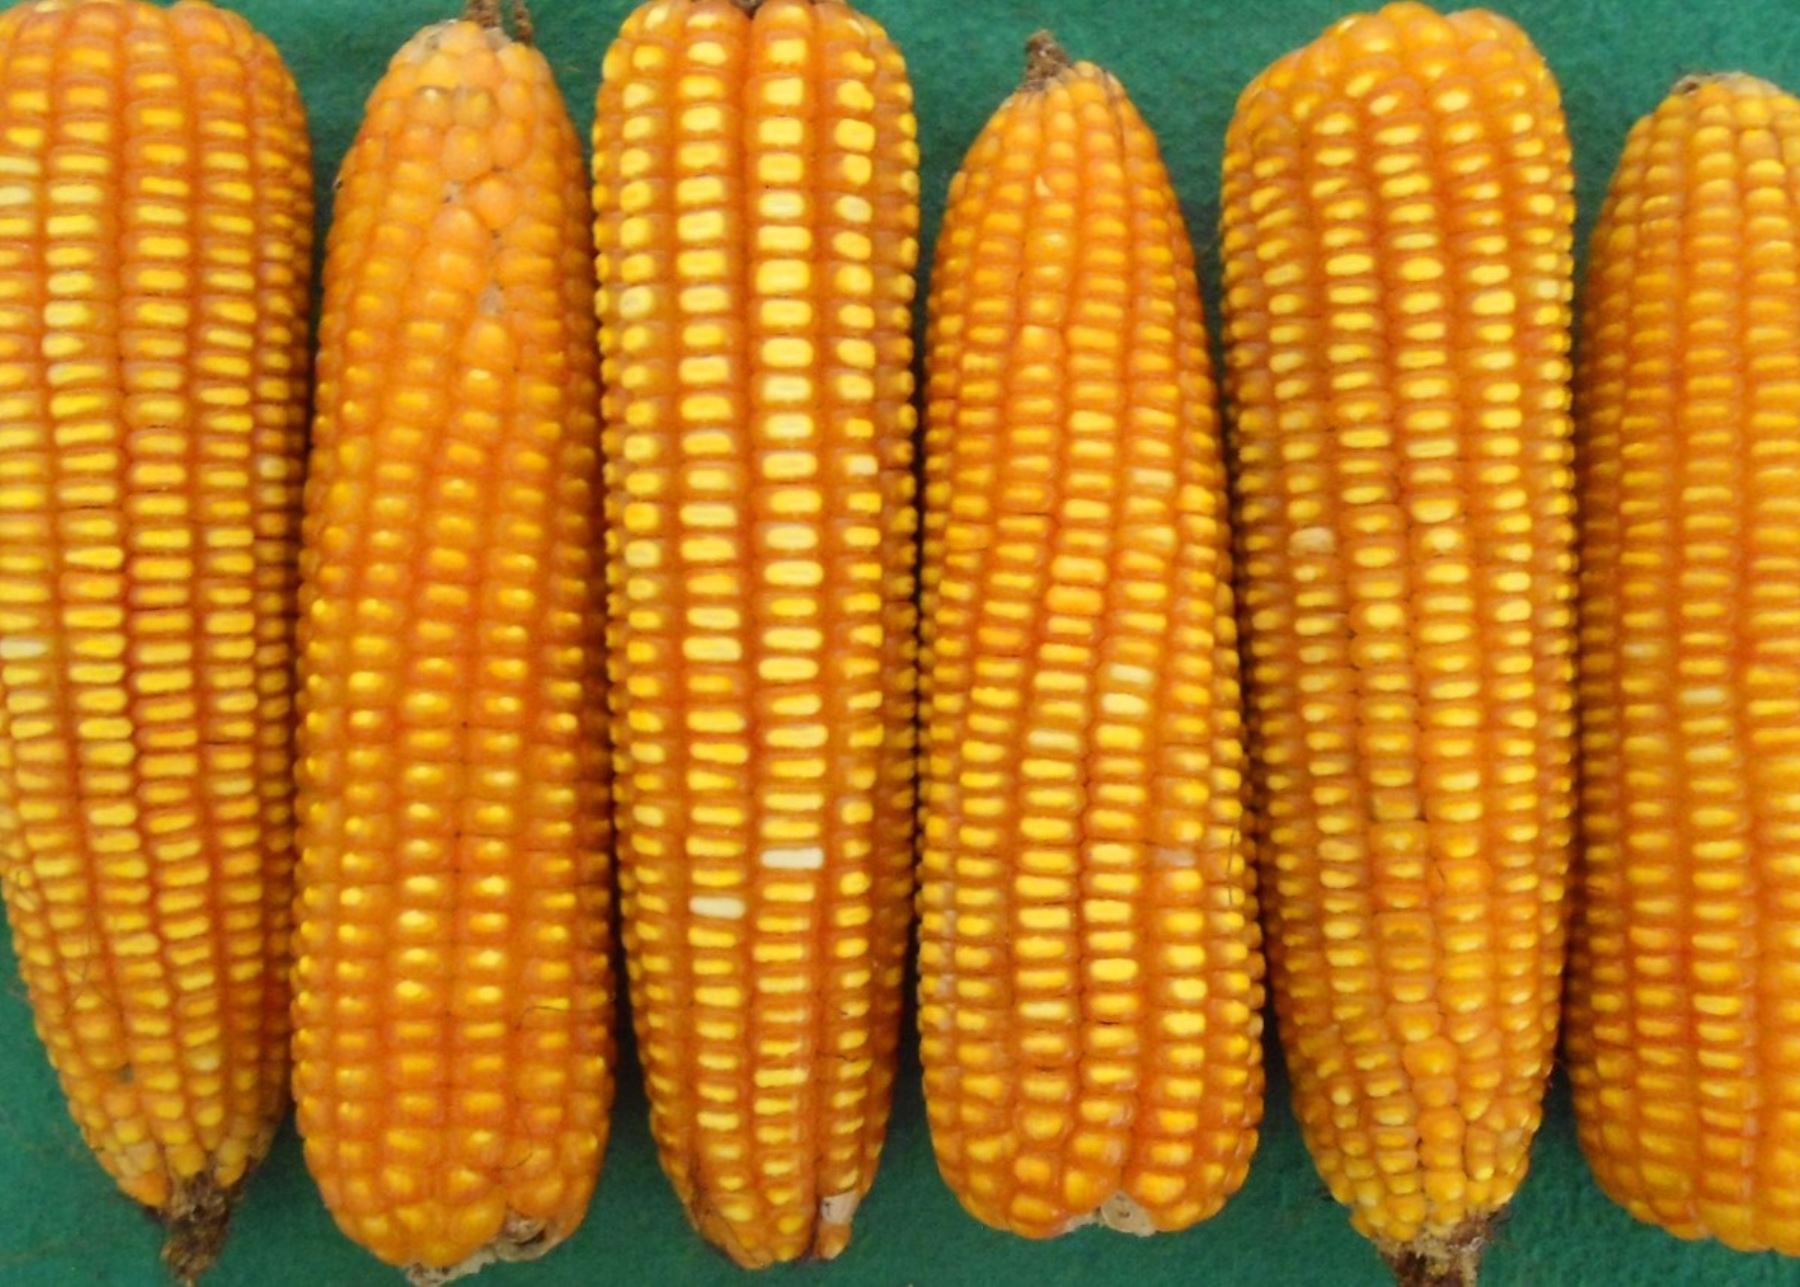 El INIA presentó nuevas variedades de frijol y maíz amarillo duro que impulsarán y potenciarán la agricultura familiar. ANDINA/Difusión